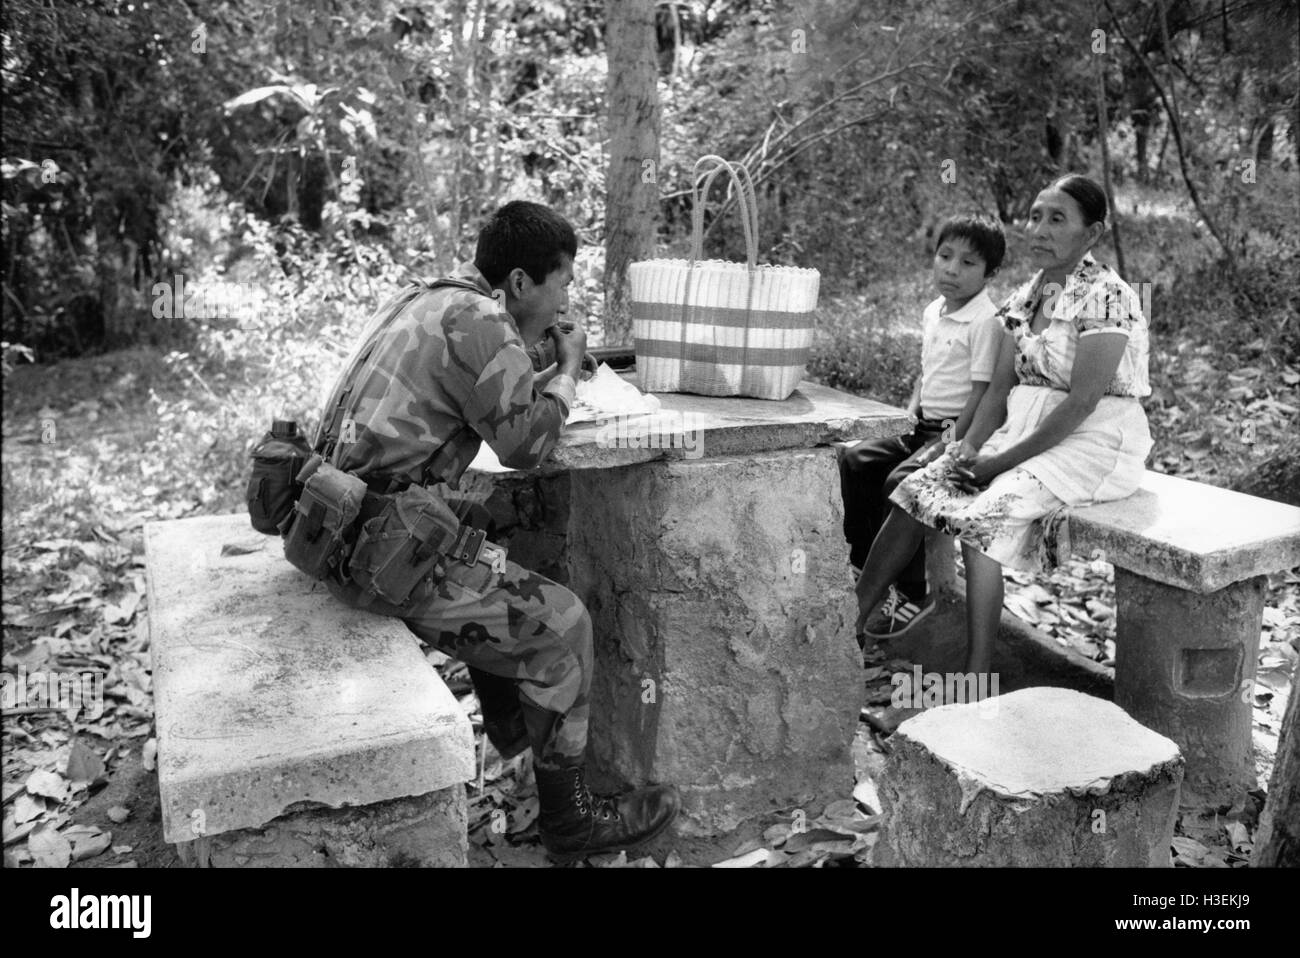 SAN SALVADOR, EL SALVADOR, FEB 1990 Une mère voit son fils, un soldat de l'armée de terre Salvadorn, manger la nourriture qu'elle lui a apporté lors d'une visite dans sa caserne. Banque D'Images